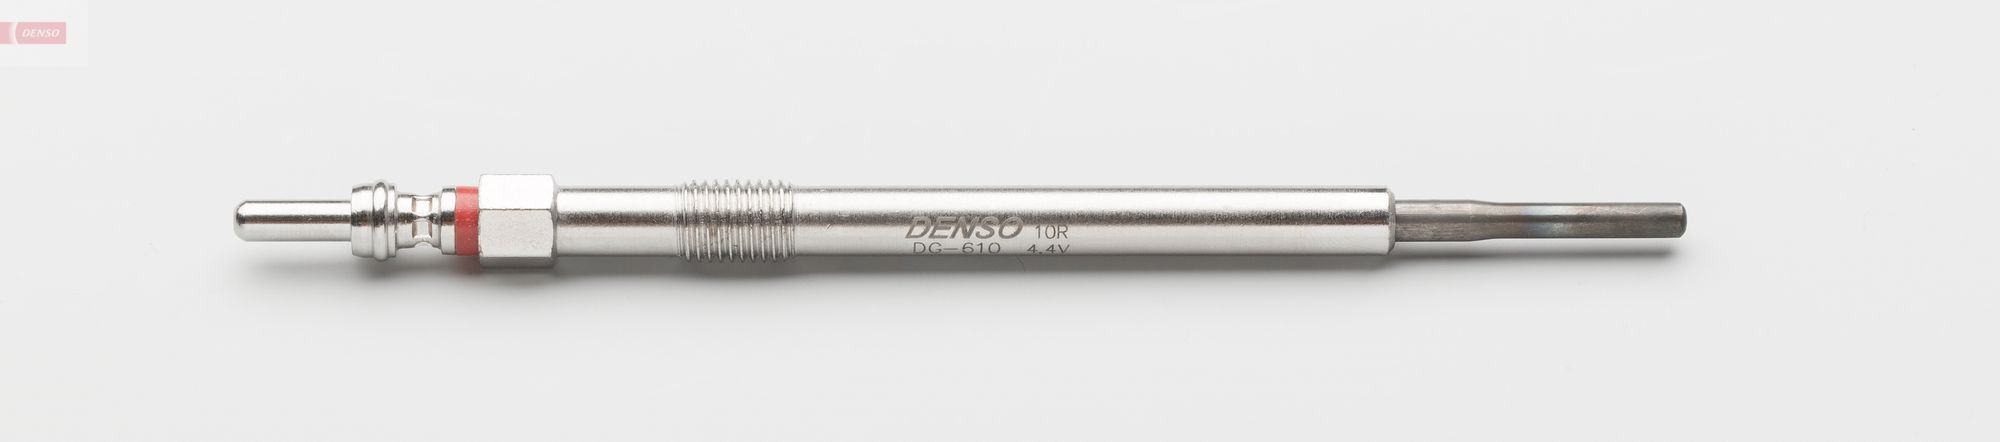 DENSO DG-610 Glow plug VOLVO experience and price